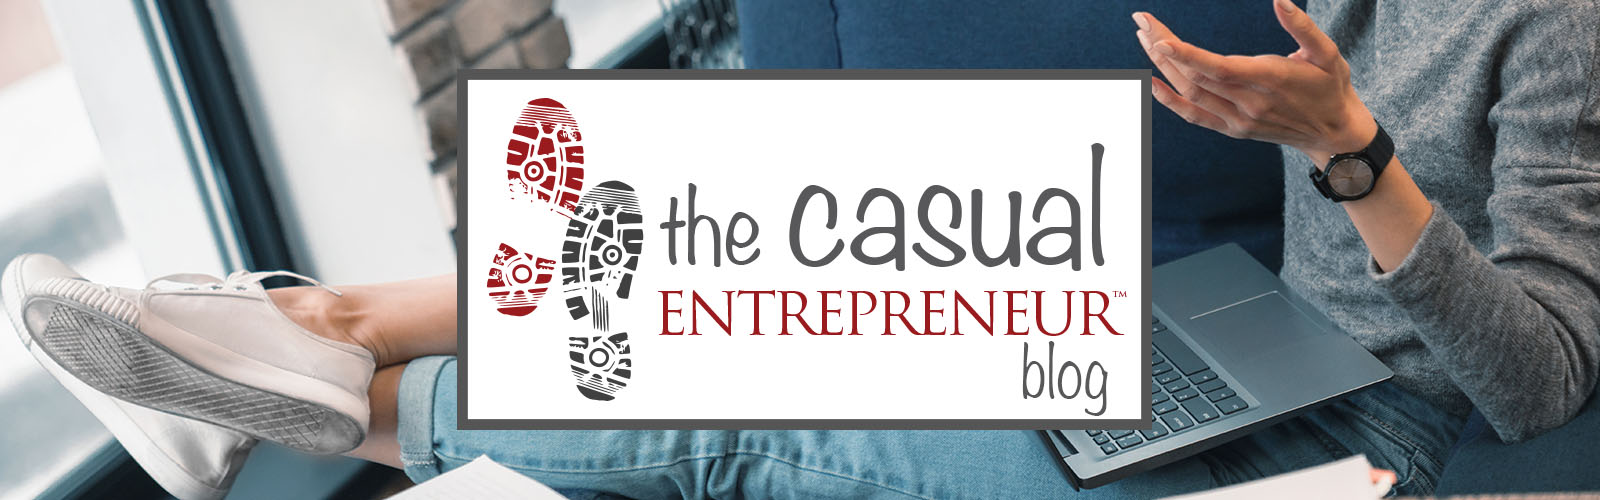 The Casual Entrepreneur Blog